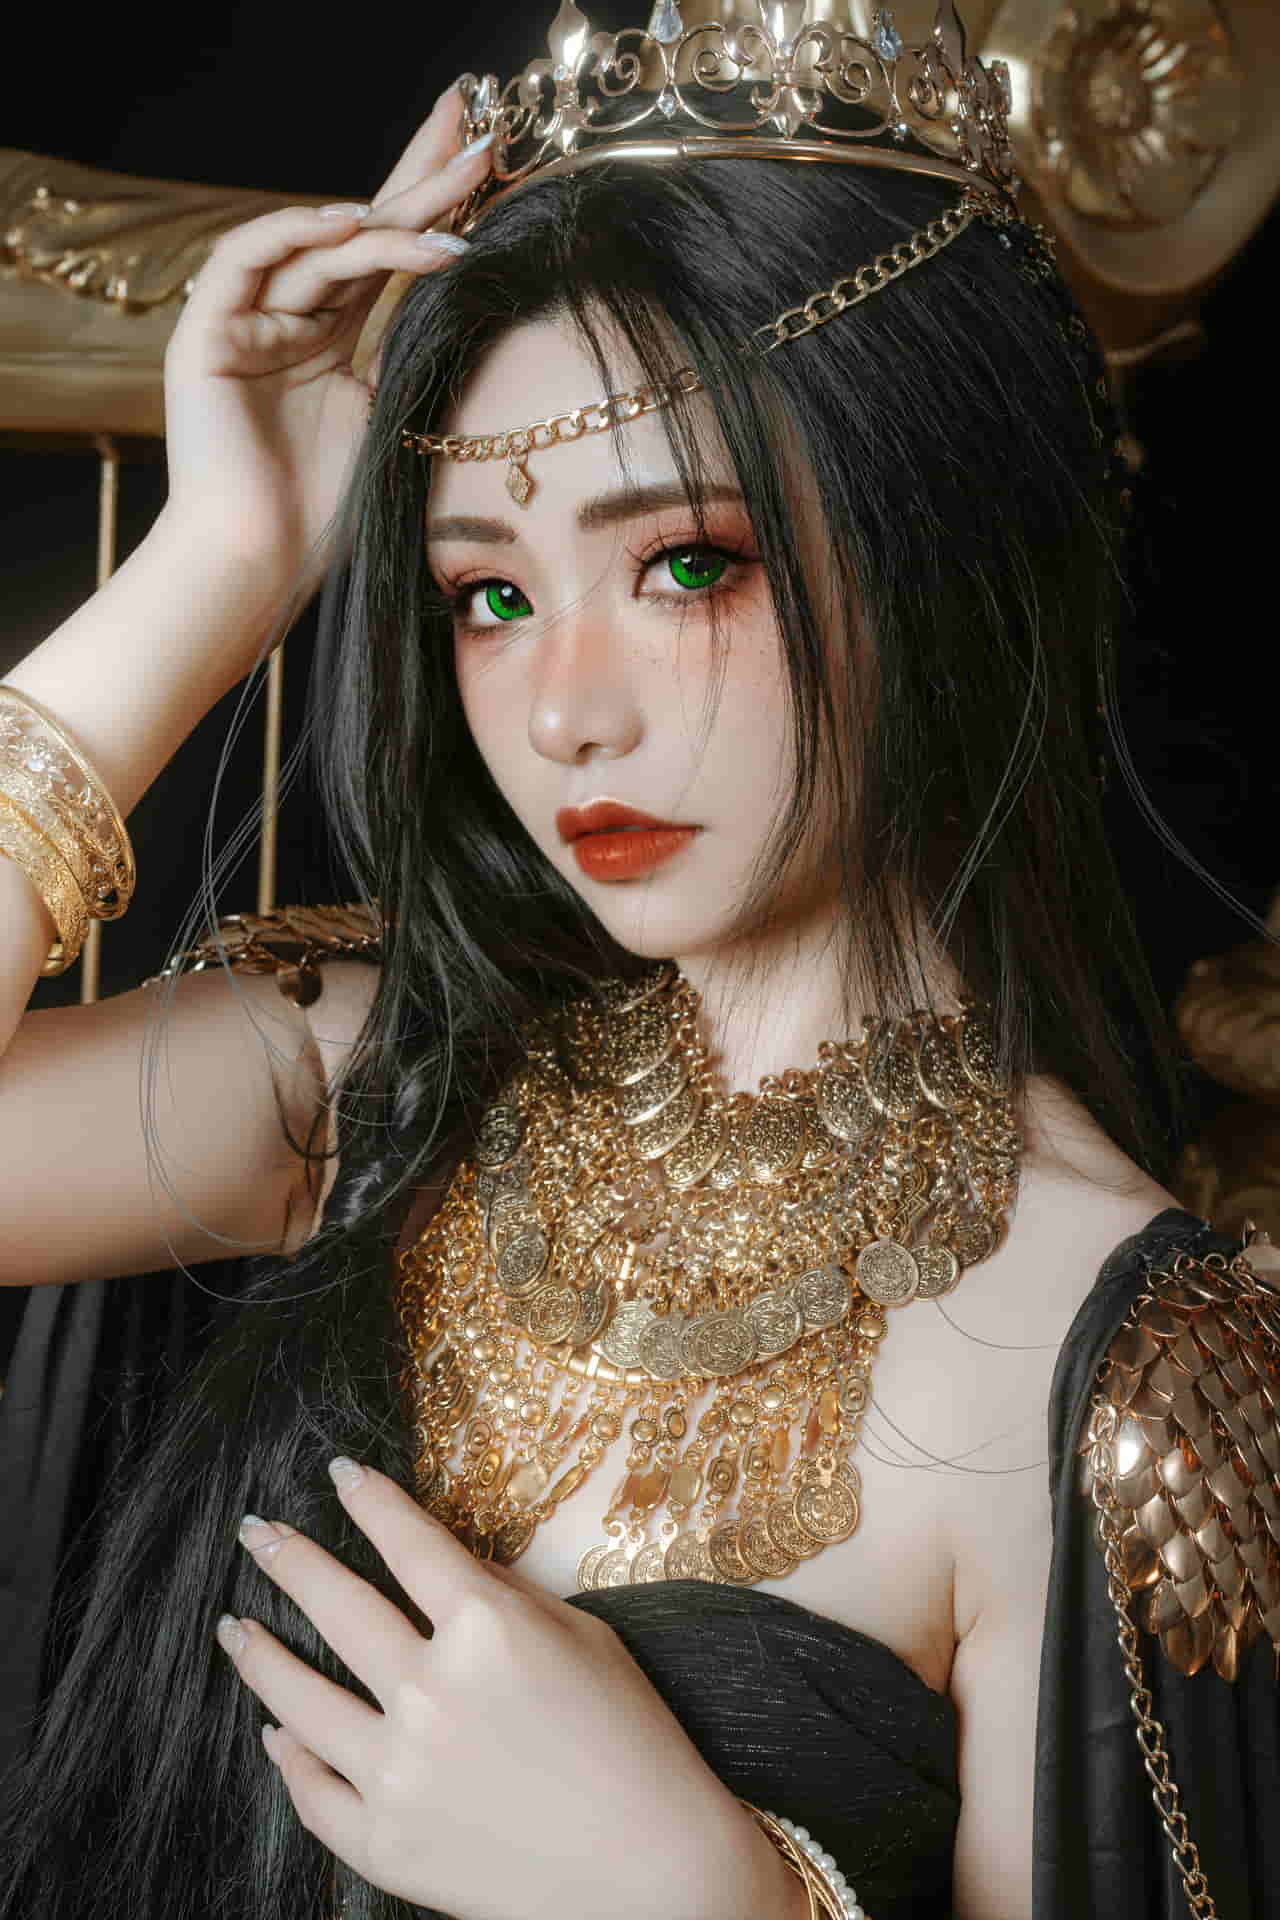 Meow Xiaoji - Princess Fengling